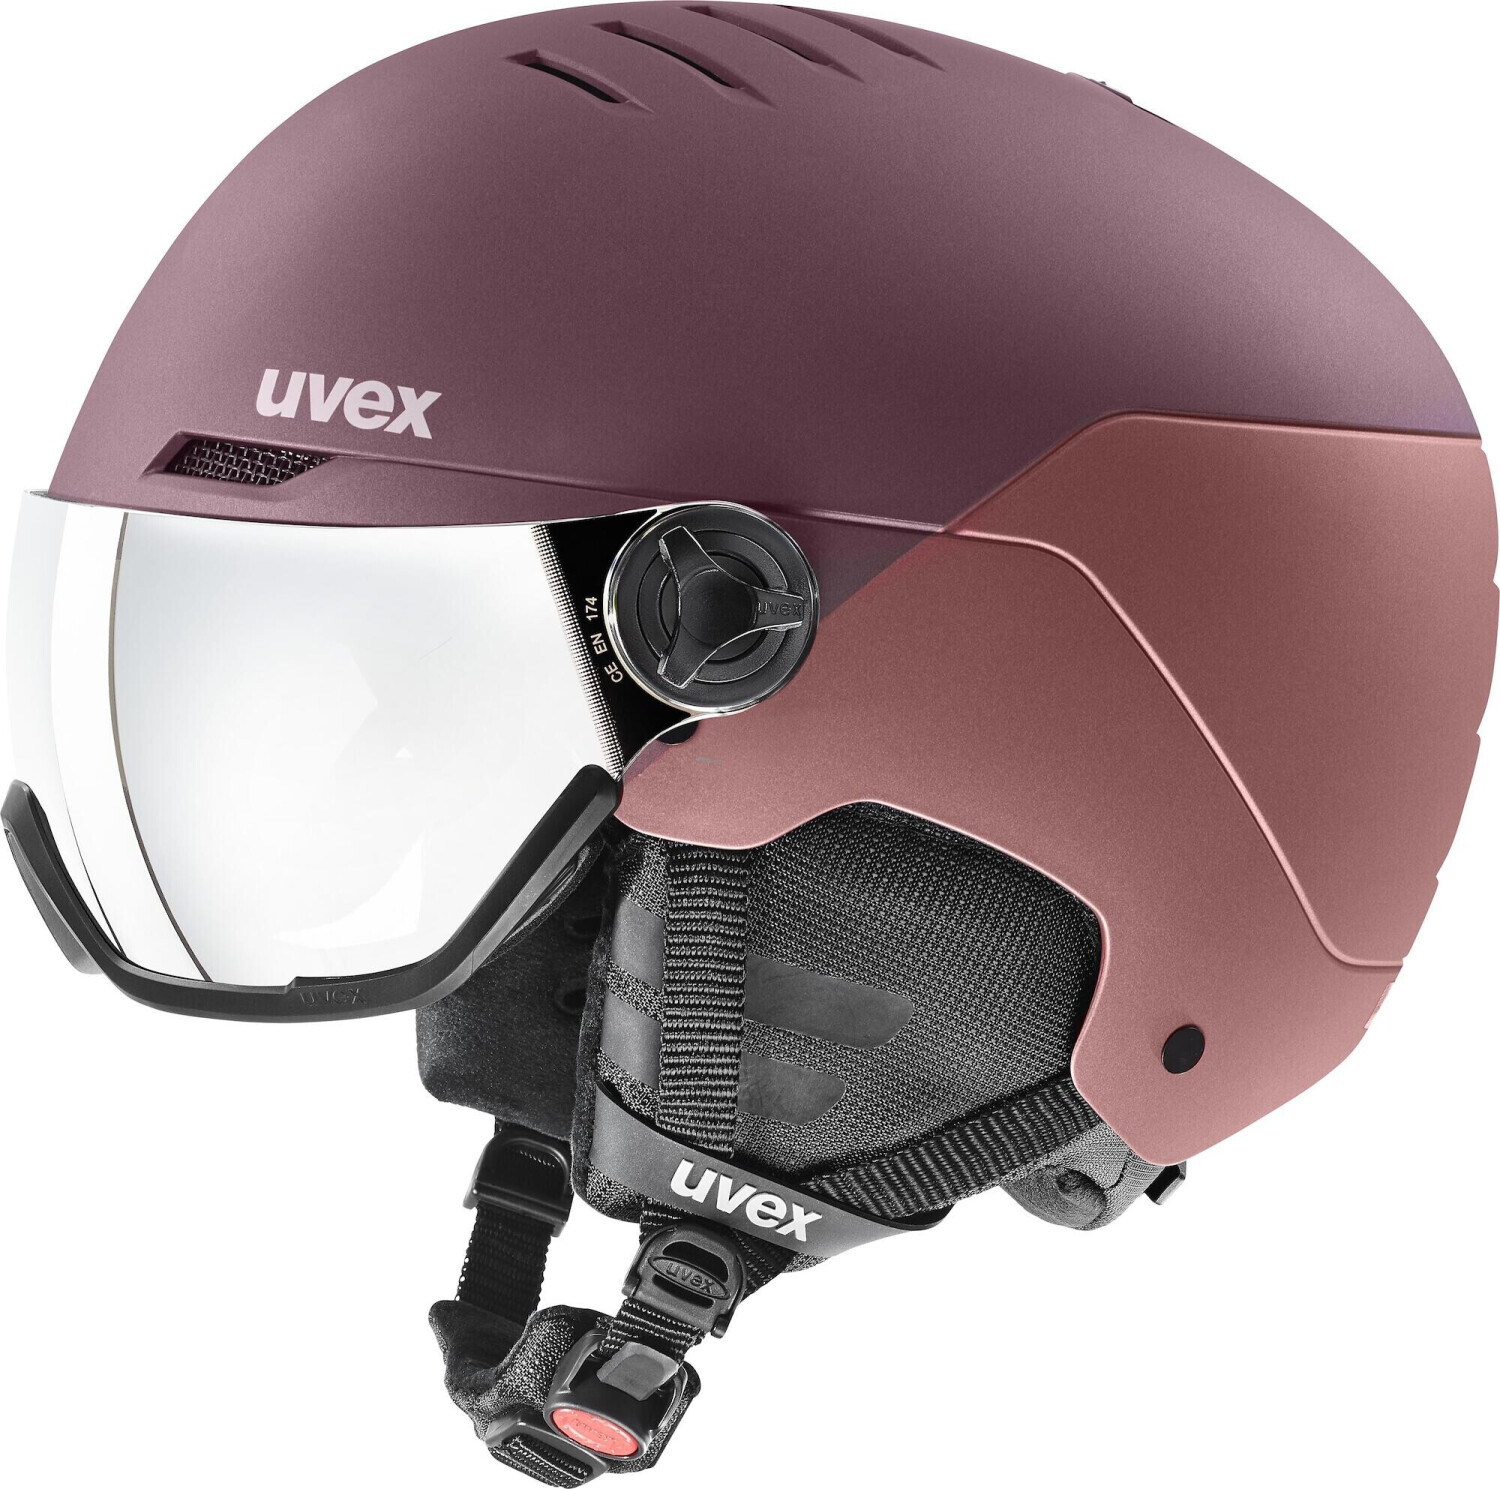 Uvex Motorradhelm Größe M + Uvex Helmbeutel